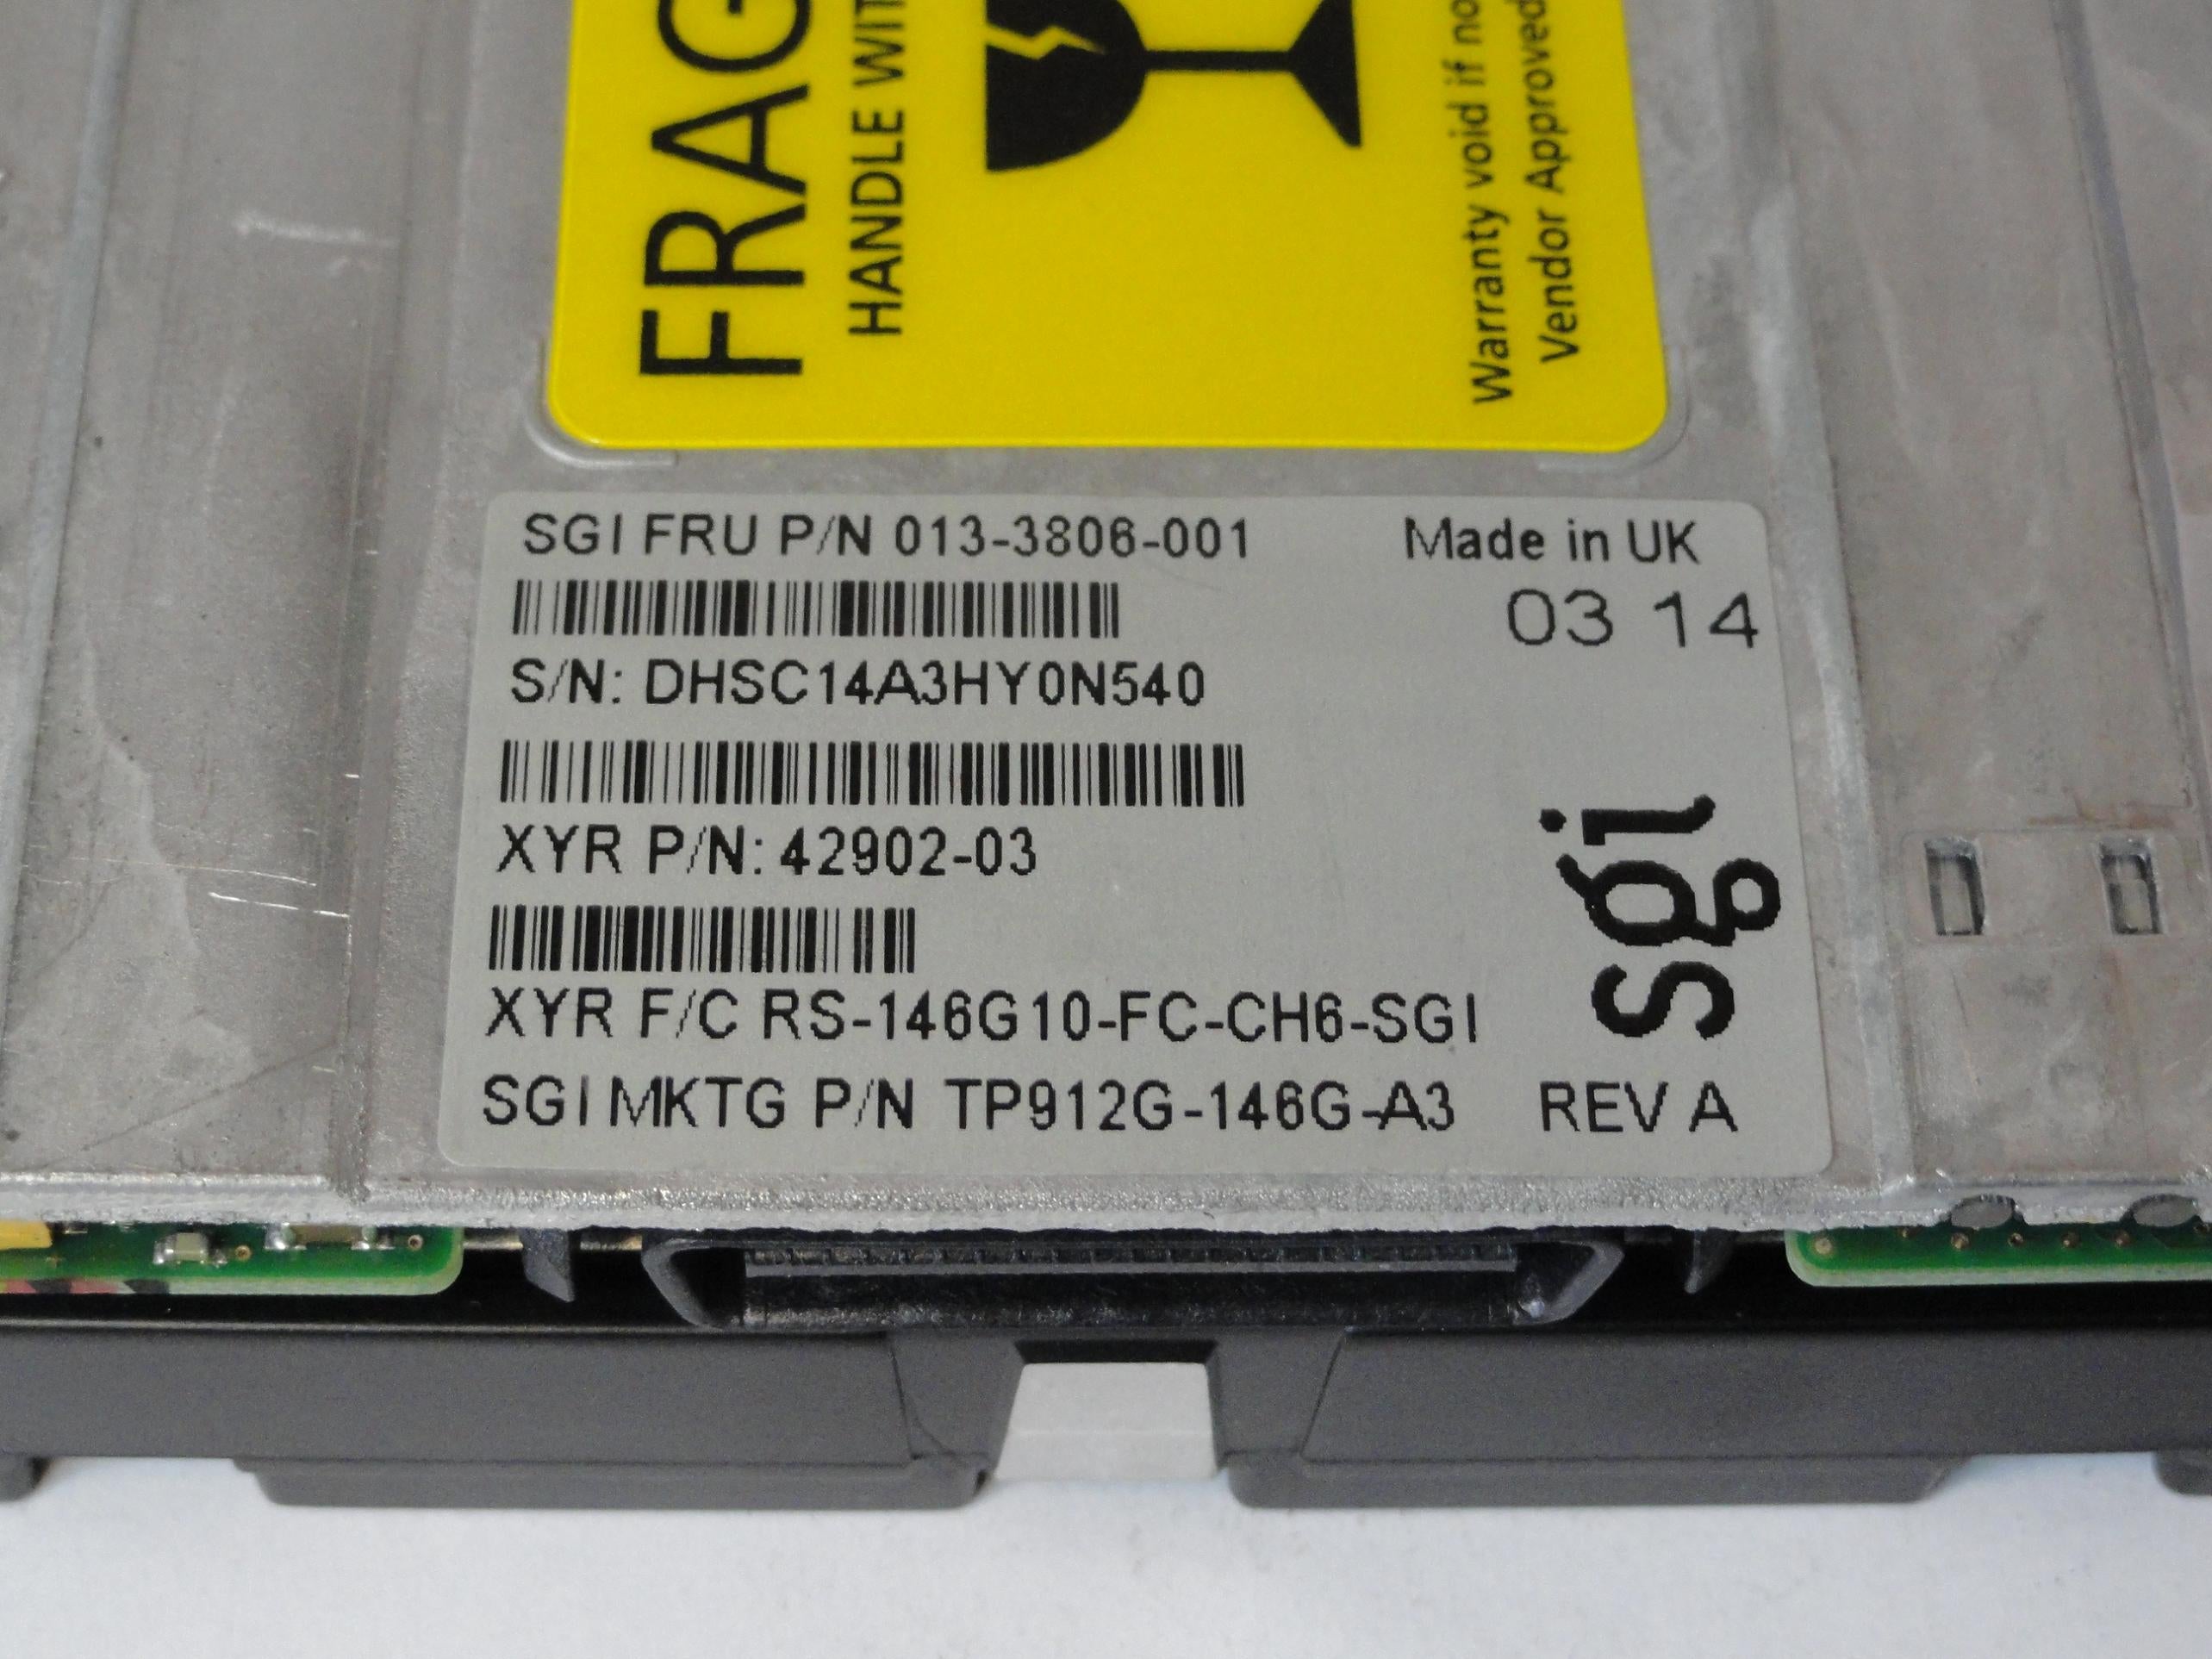 PR23976_9T3004-002_Seagate SGI 36GB Fibre Channel 15Krpm 3.5in HDD - Image4